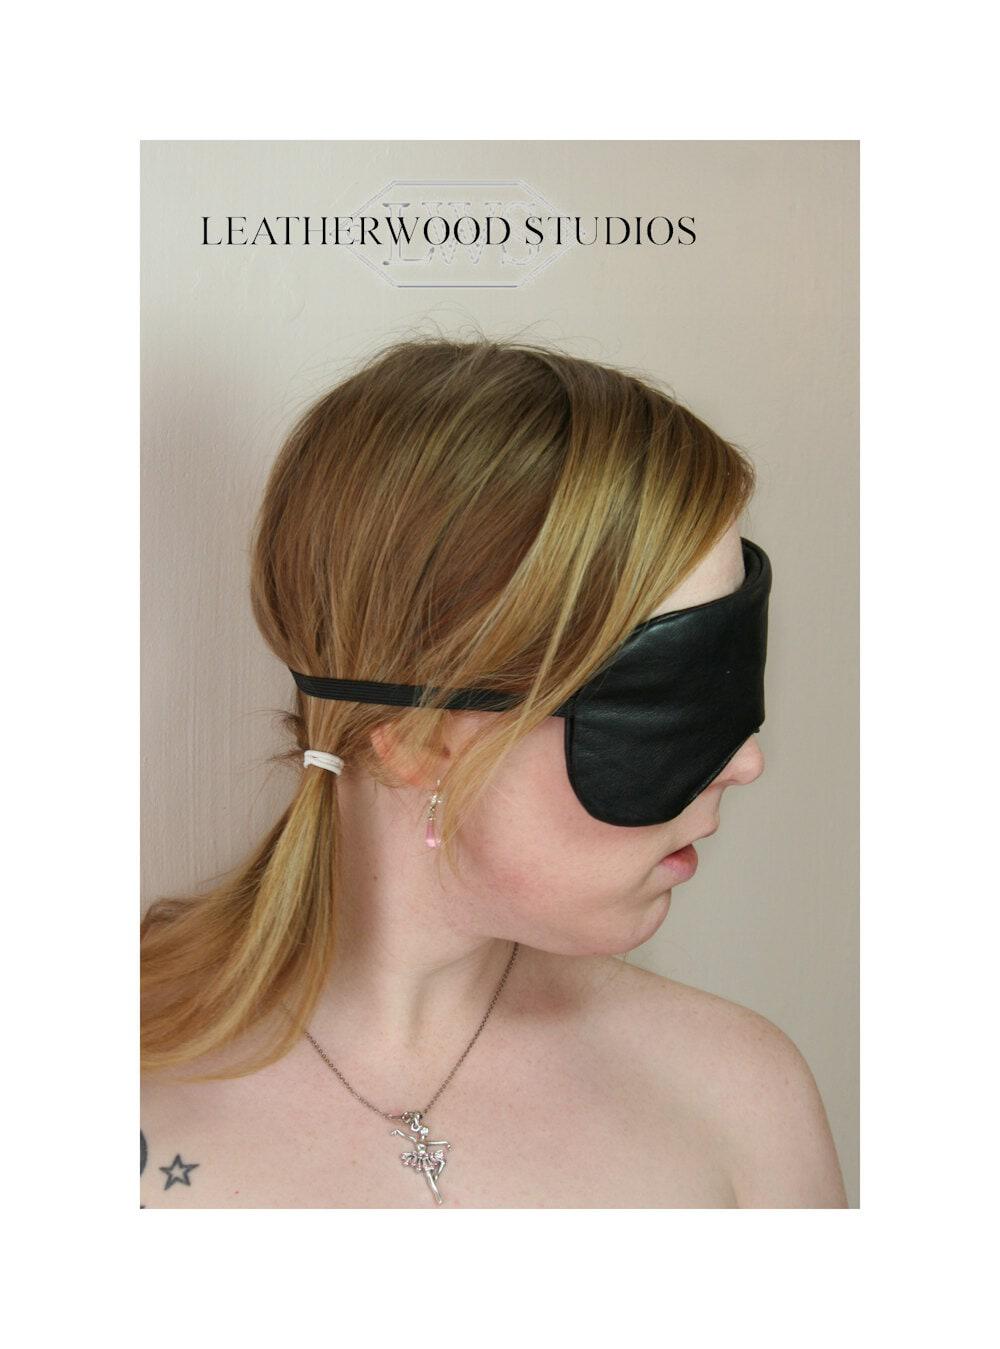 Products :: BDSM Bondage Leather Blindfold Sleep Mask Eye Blinders in Black